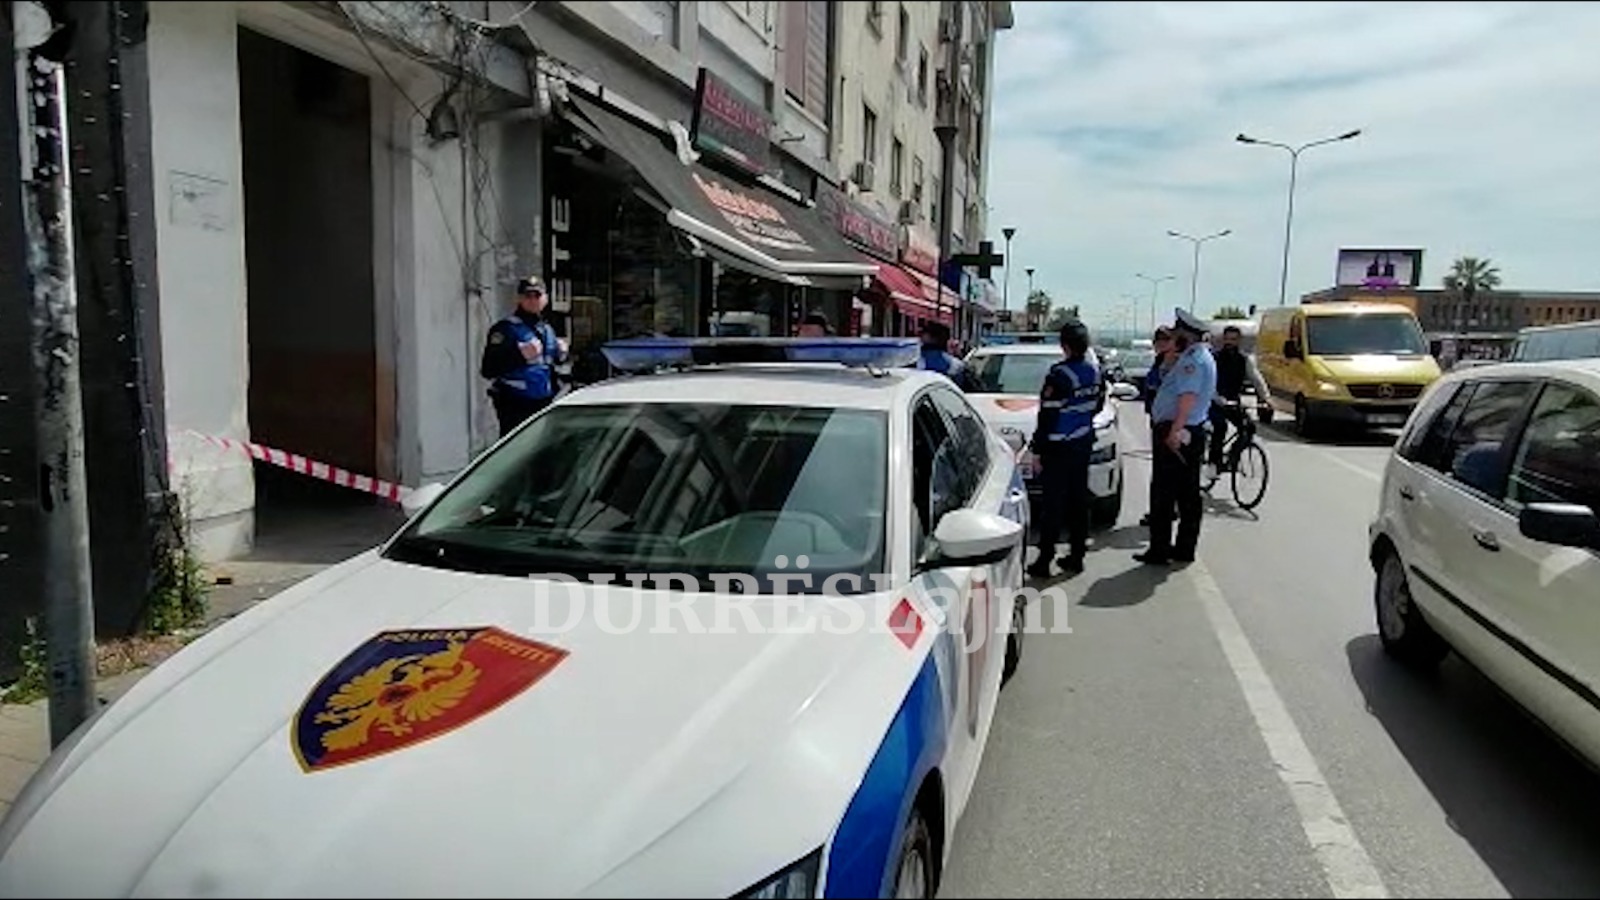 Depresion deri në vetëflijim, 40 vetëvrasje në Durrës brenda 1 viti (VIDEO)